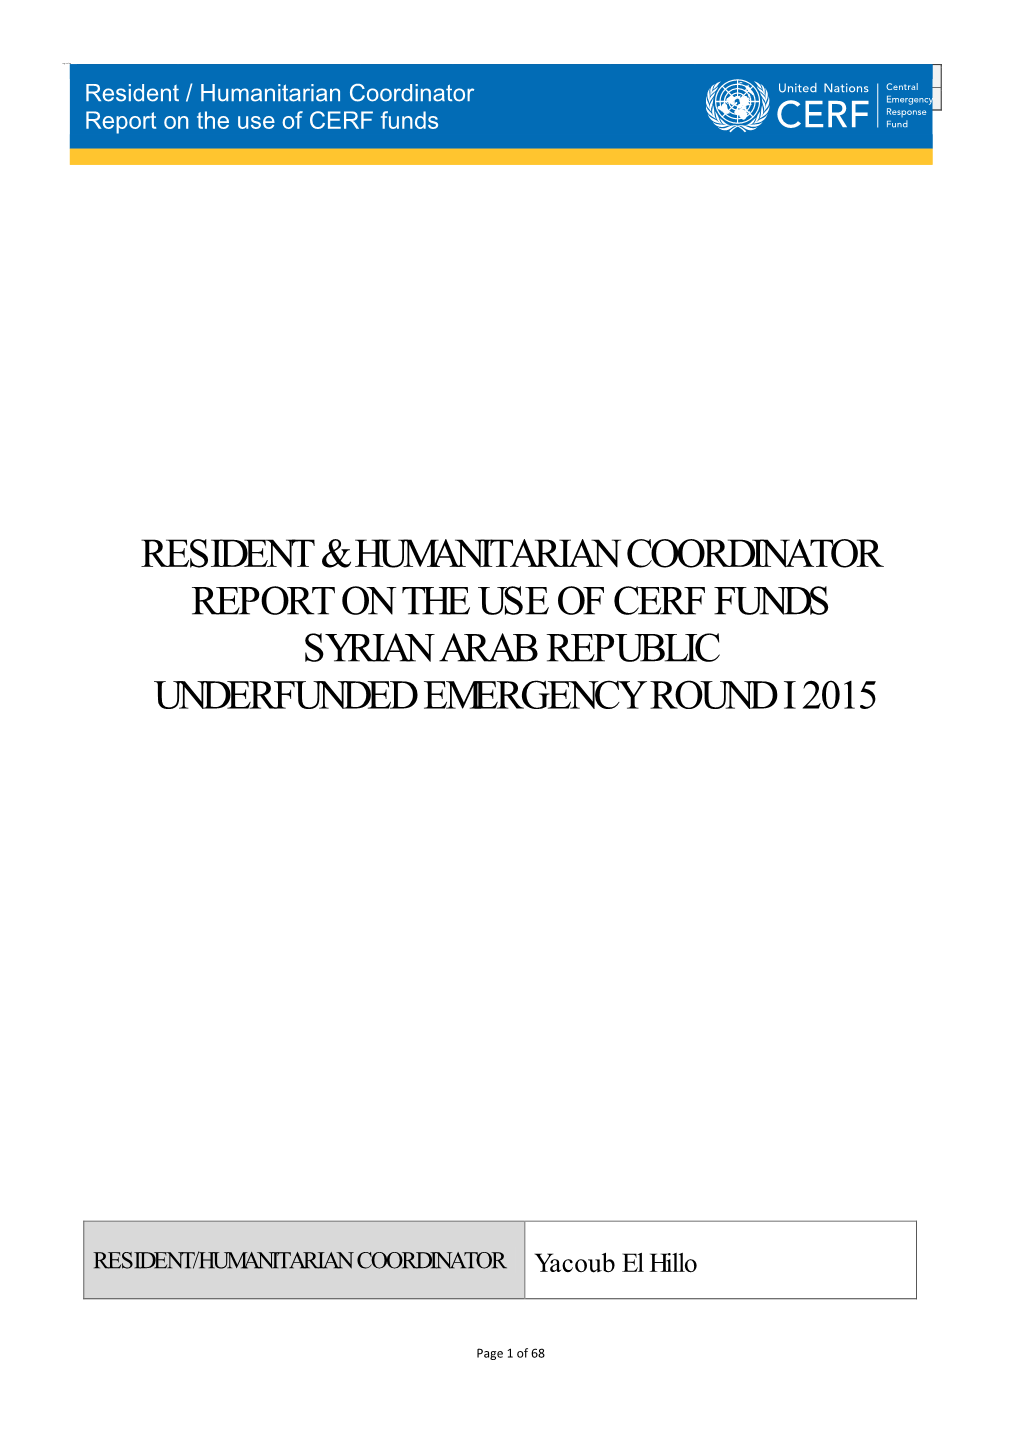 15-UF-SYR-13605-NR01 Syrian Arab Republic RCHC.Report